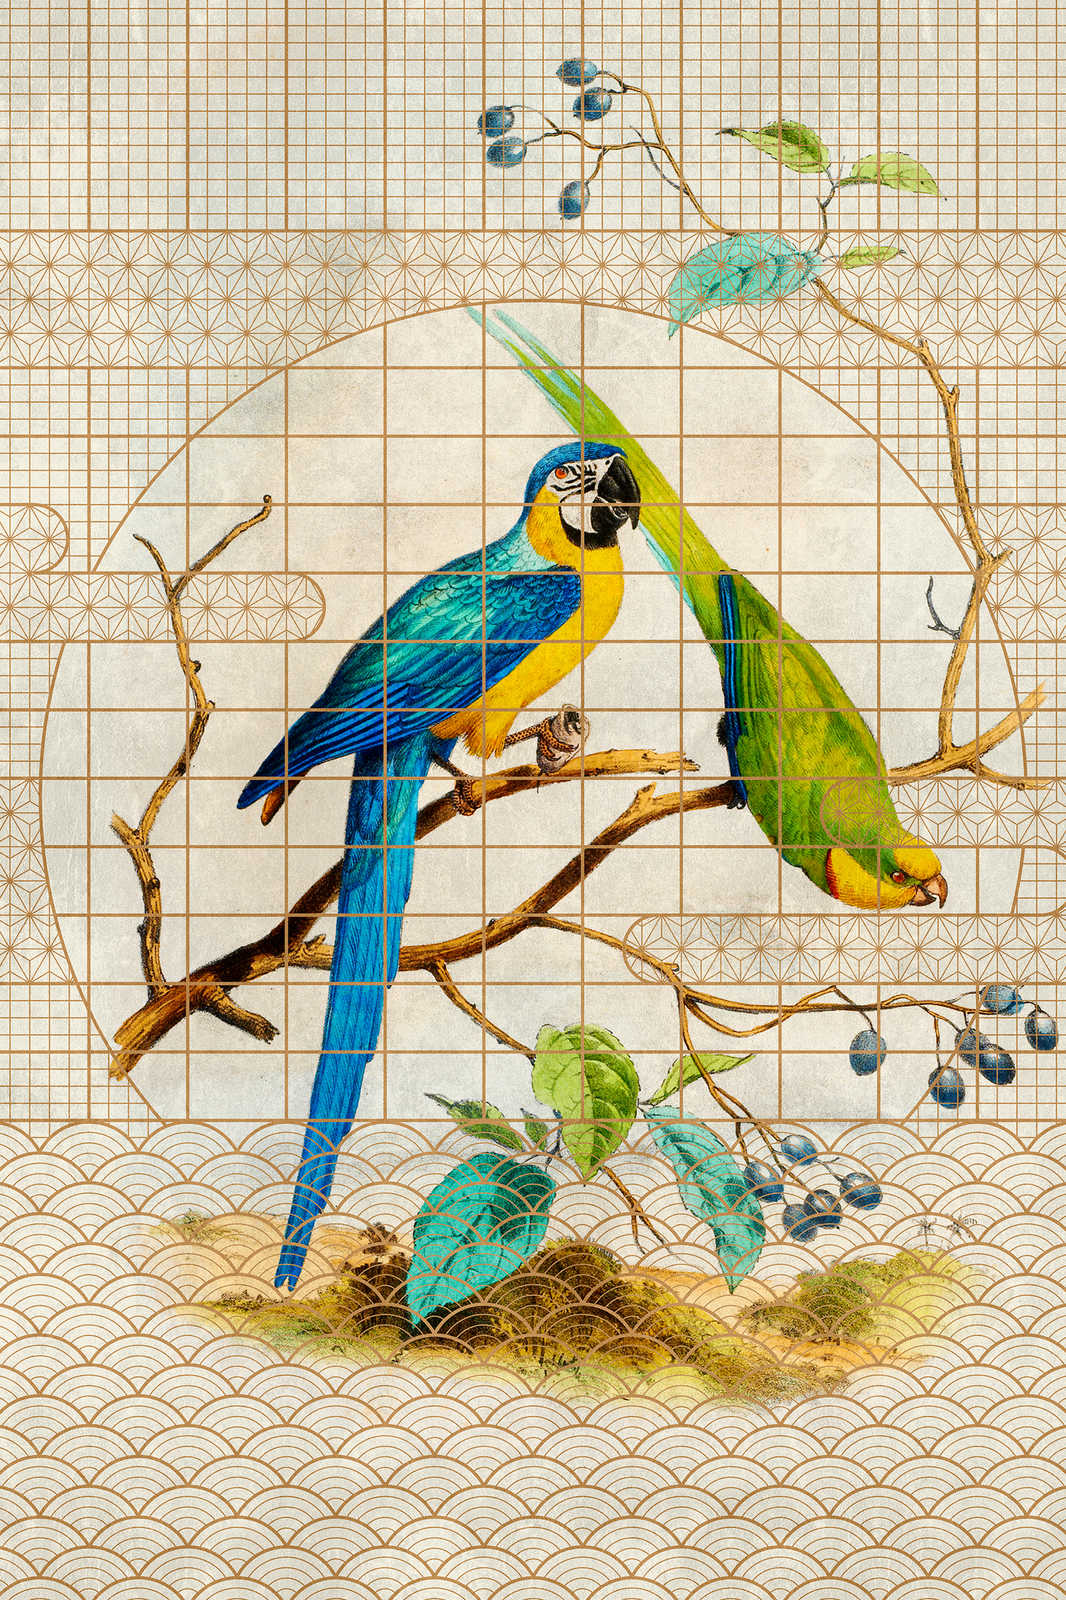             Volière 3 - Vintage stijl papegaai & gouden patroon canvas schilderij - 1.20 m x 0.80 m
        